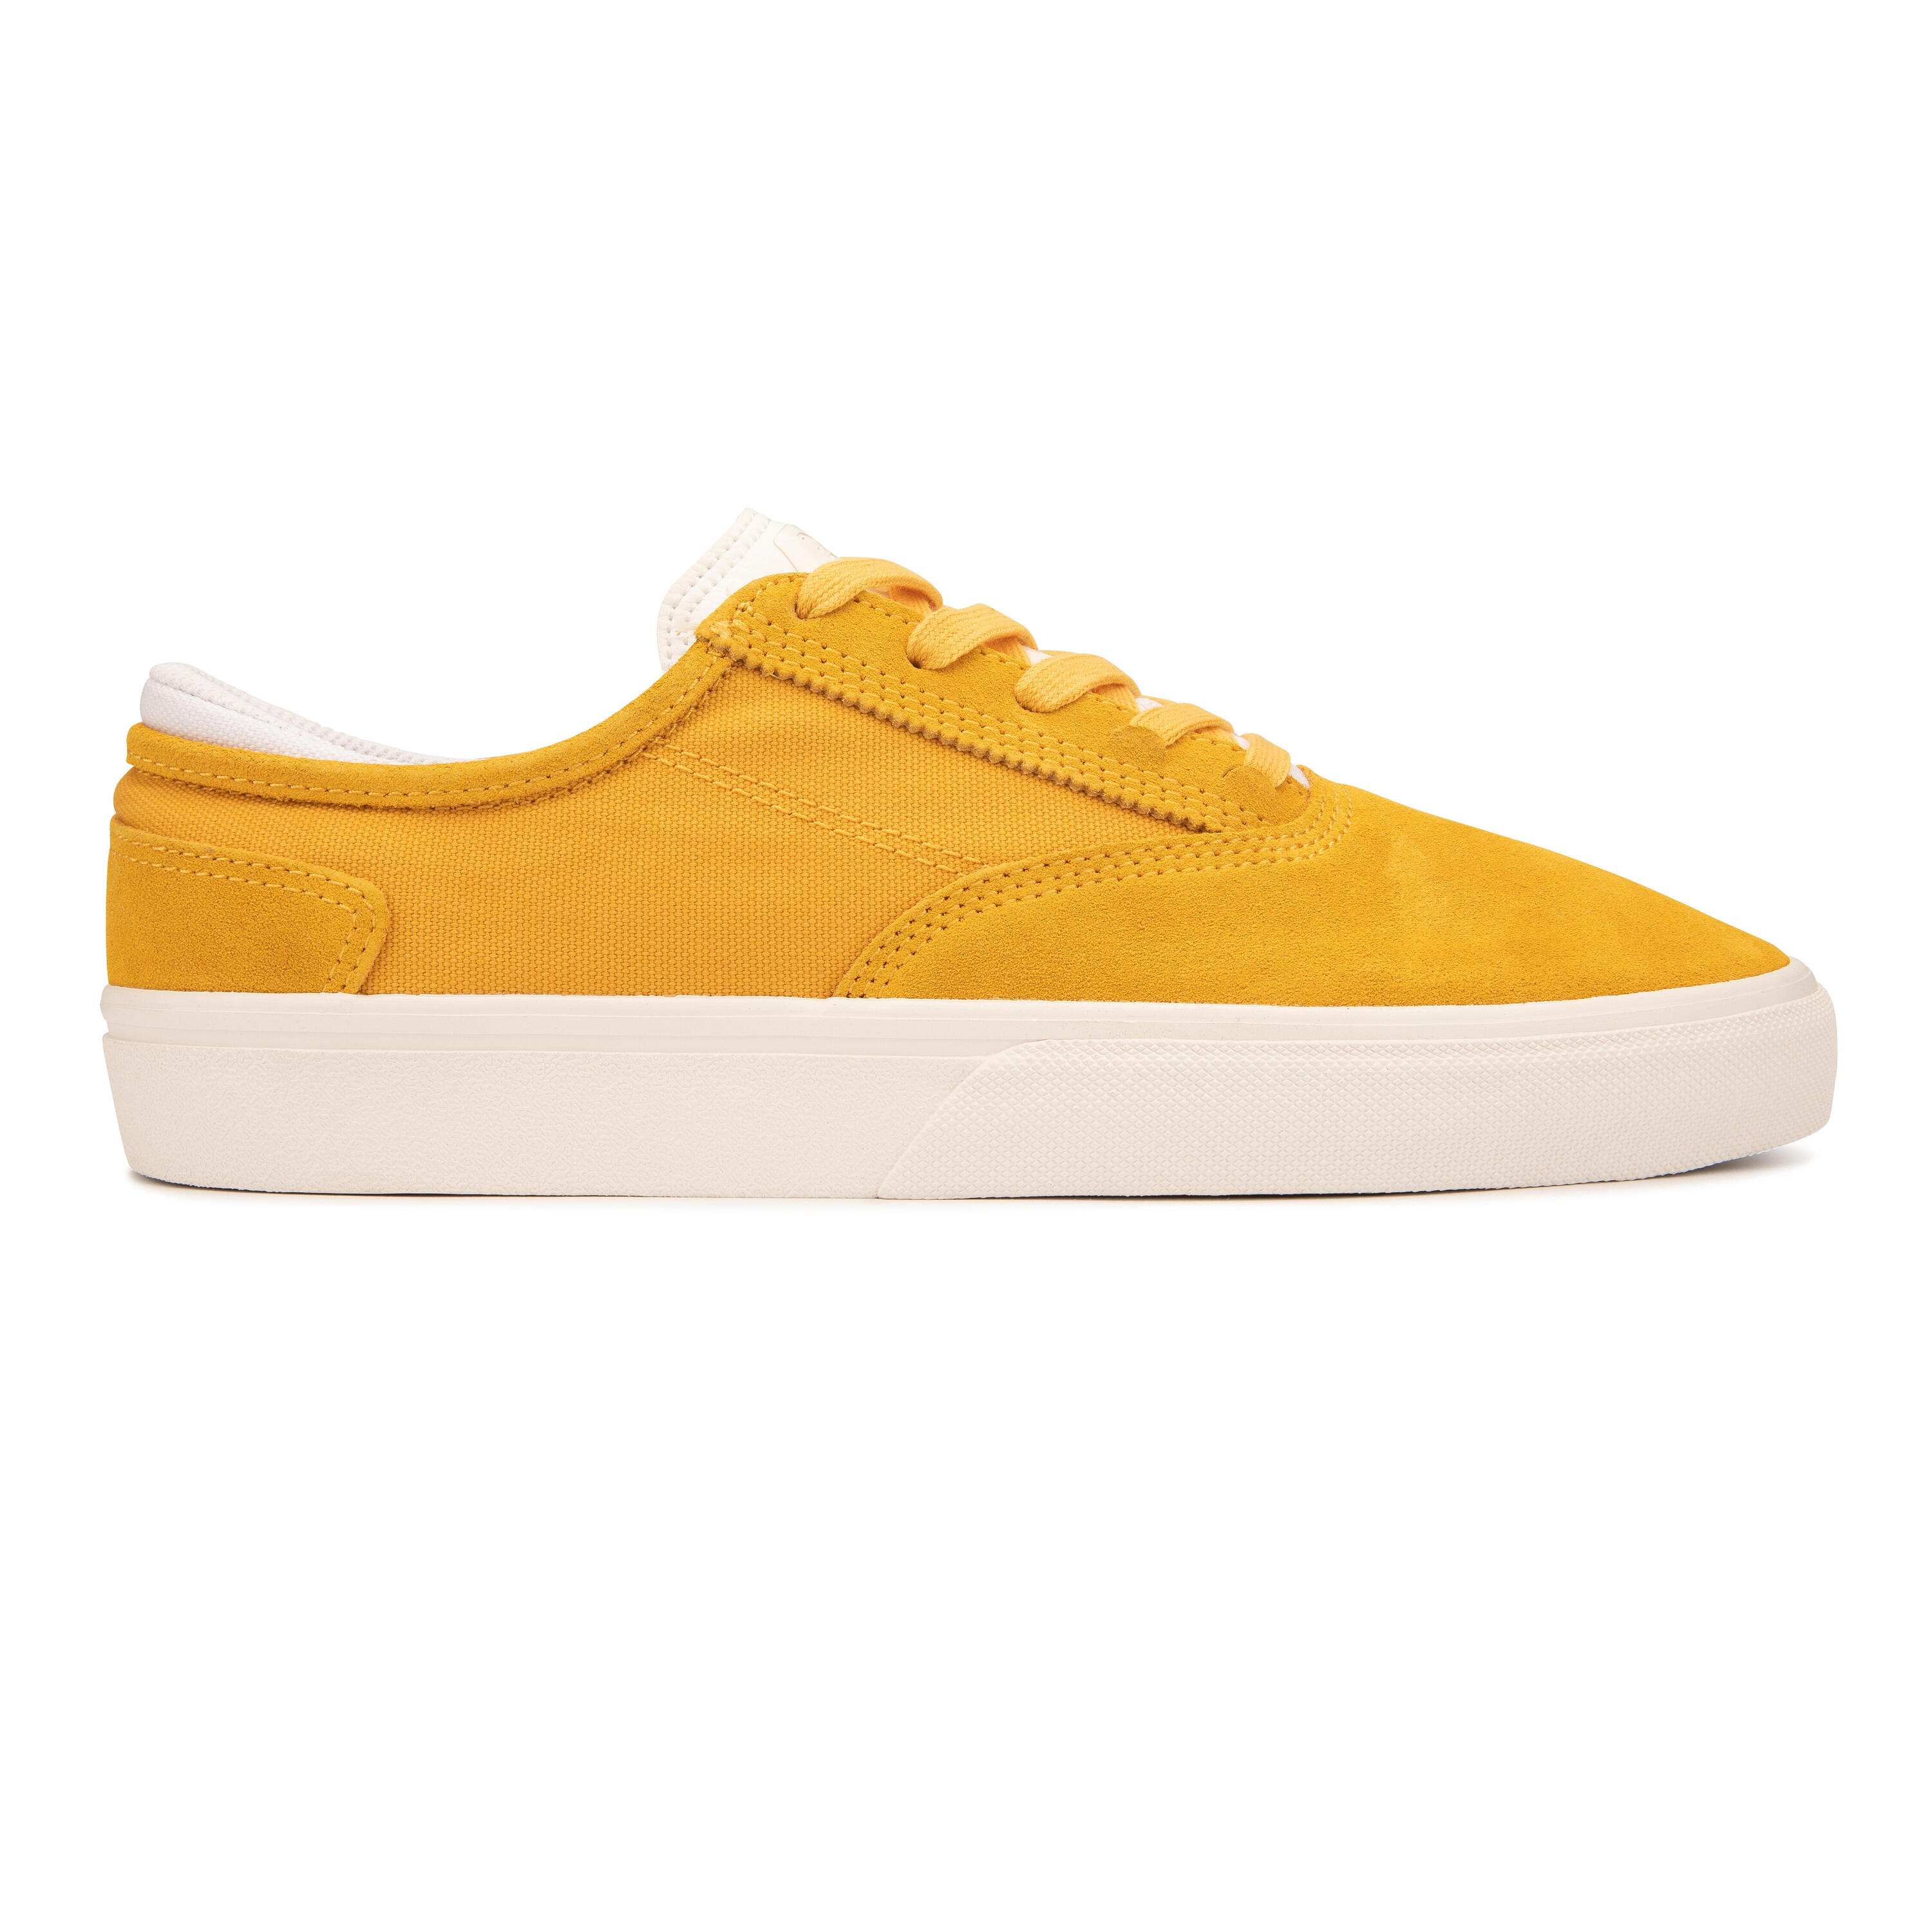 Adult Vulcanised Skate Shoes Vulca 500 II - Yellow/White 2/14